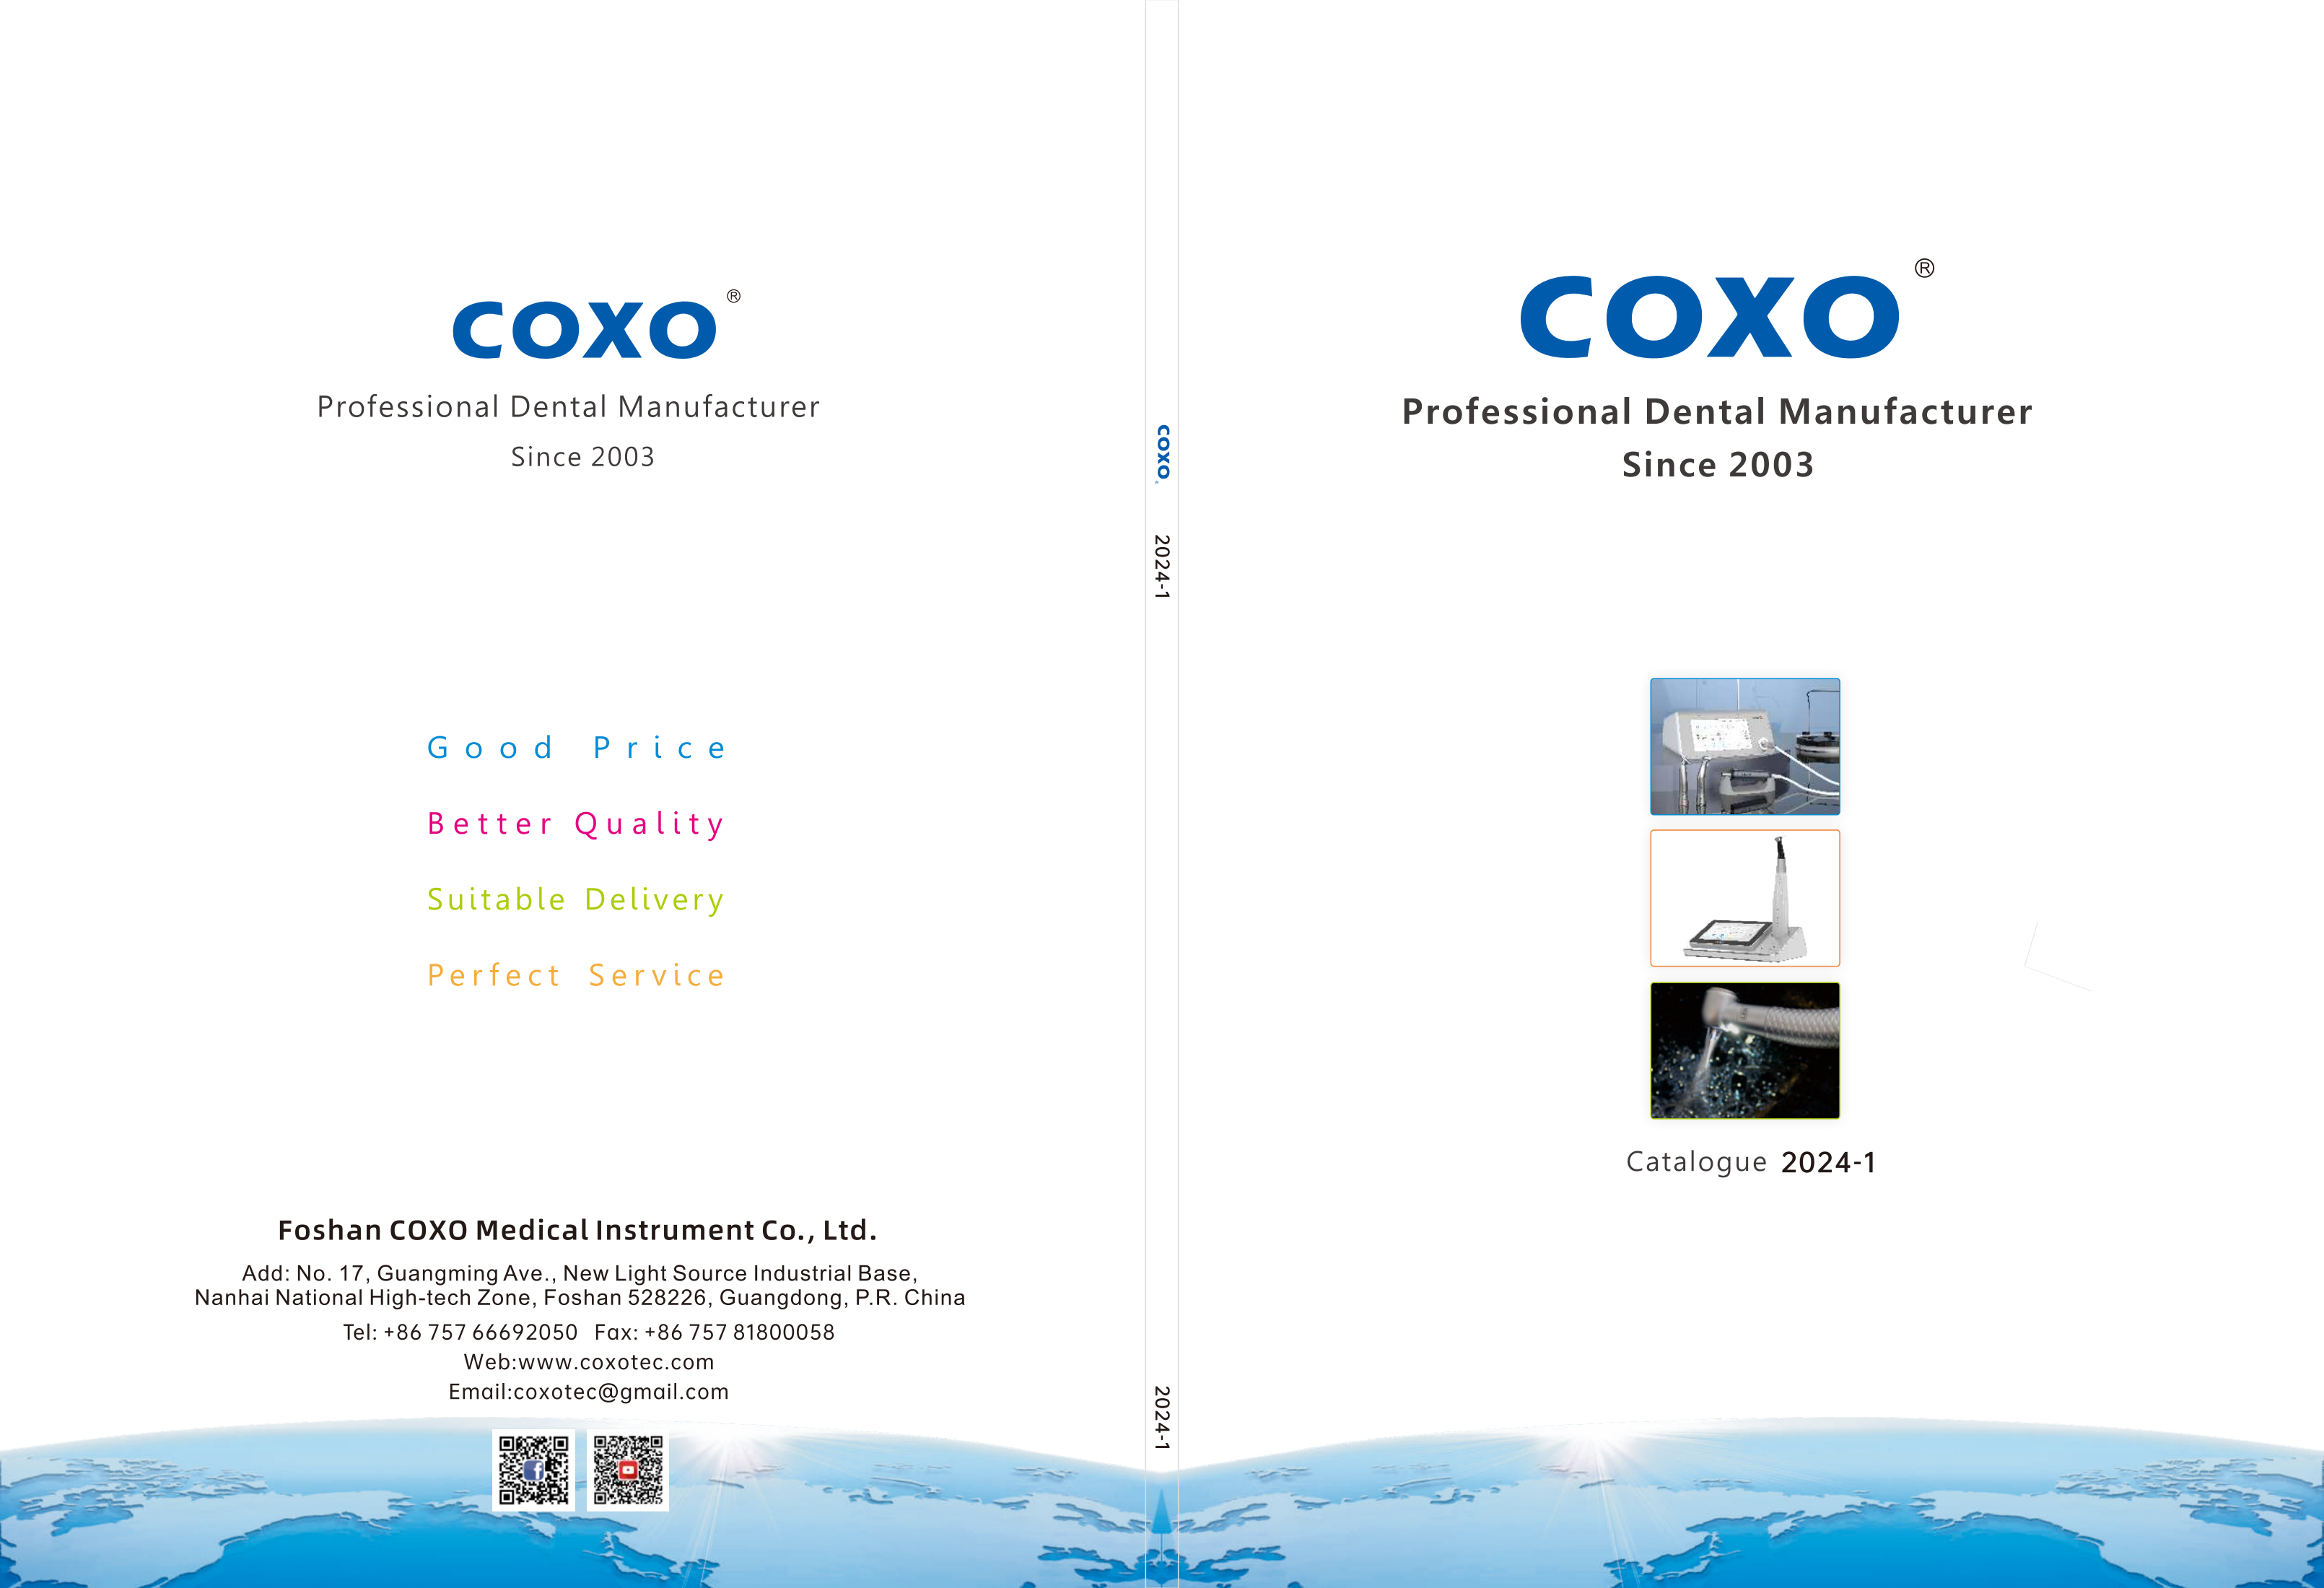 COXO's catalogue